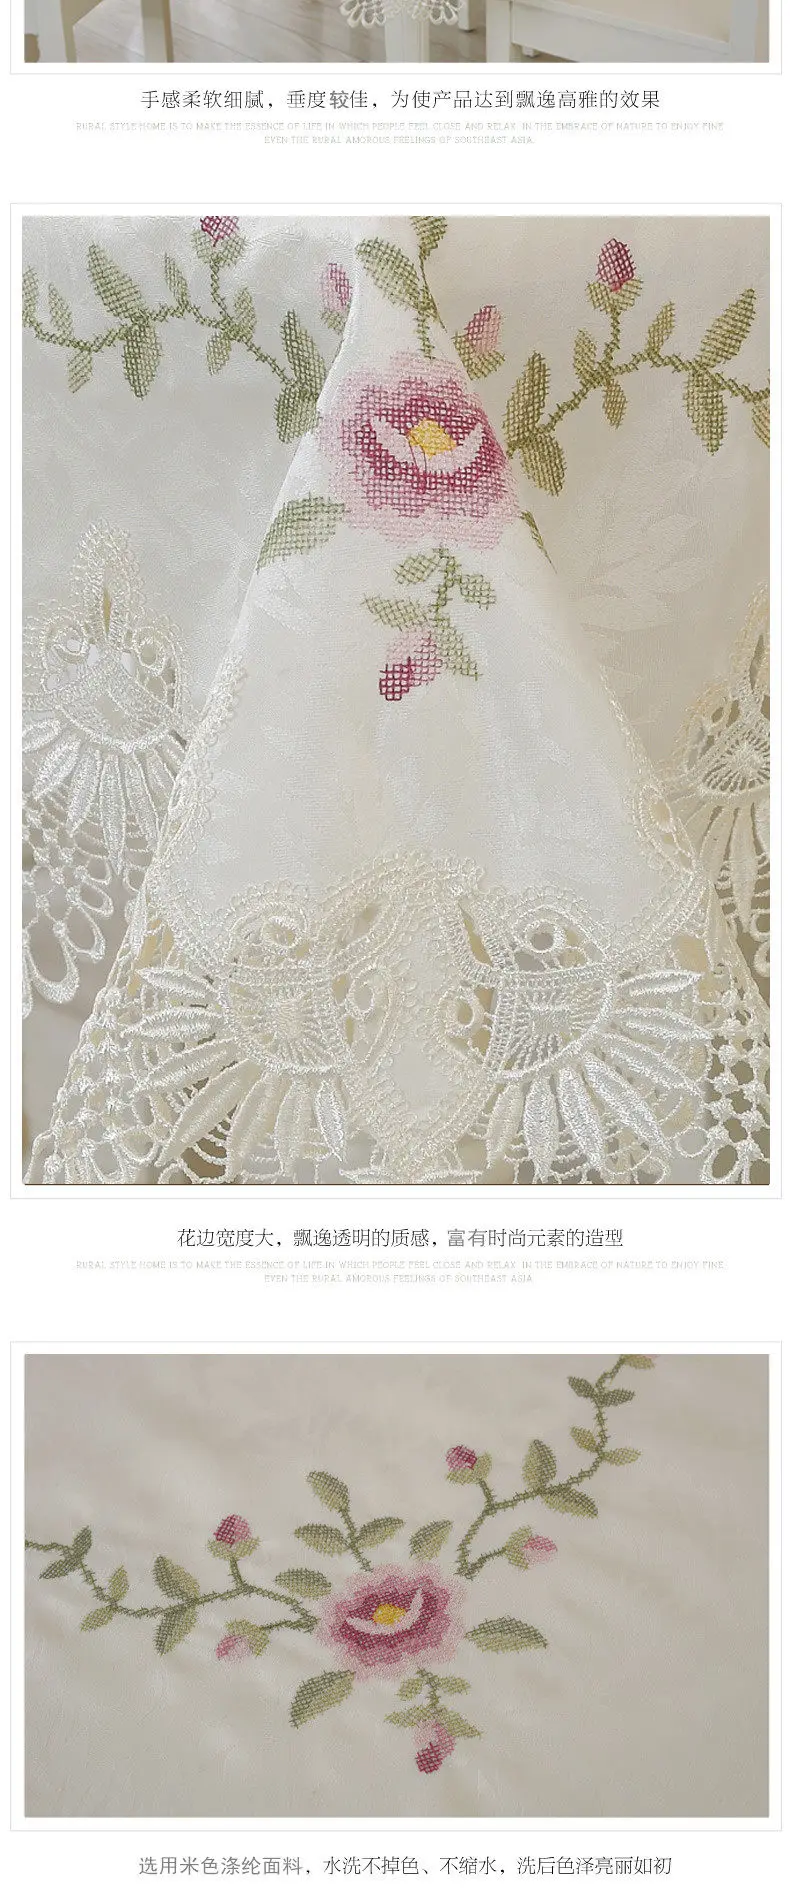 Горячая Европейская круглая кружевная скатерть Цветочная вышивка элегантная скатерть для обеденного стола полотенца вышивка крестиком выдалбливают стиль